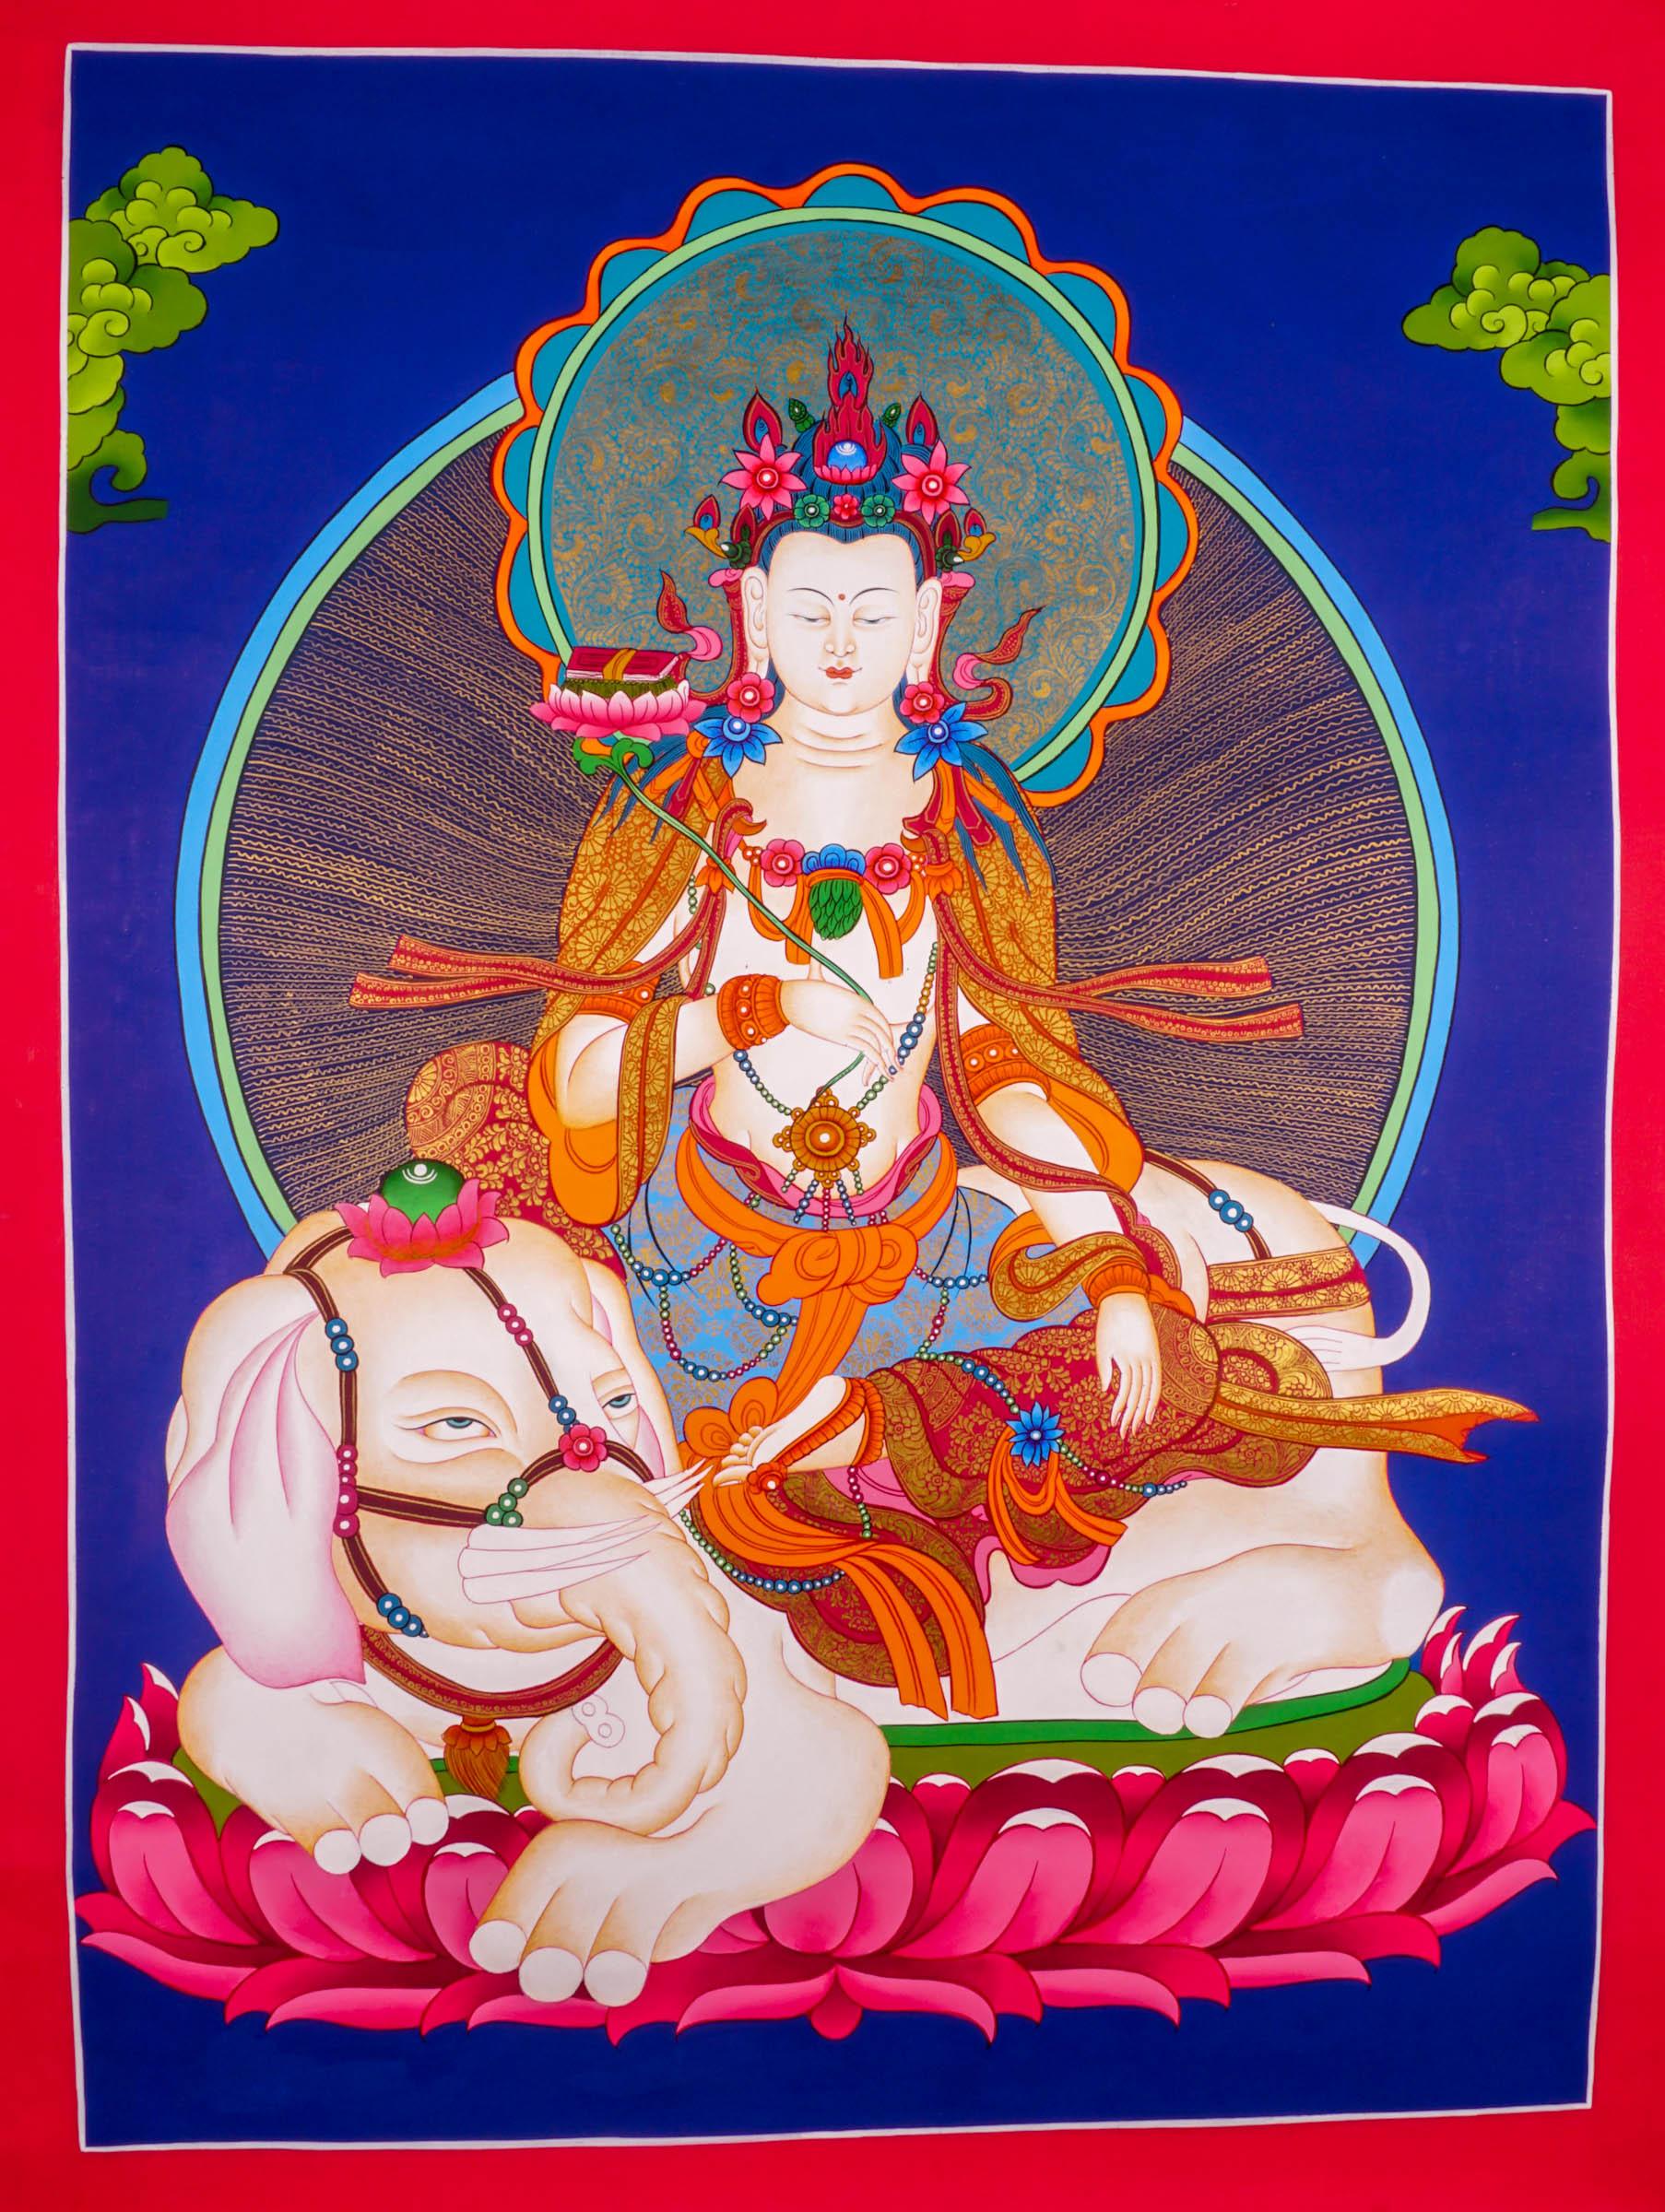 Japanese Thangka of Manjushri - God of wisdom on white Elephant